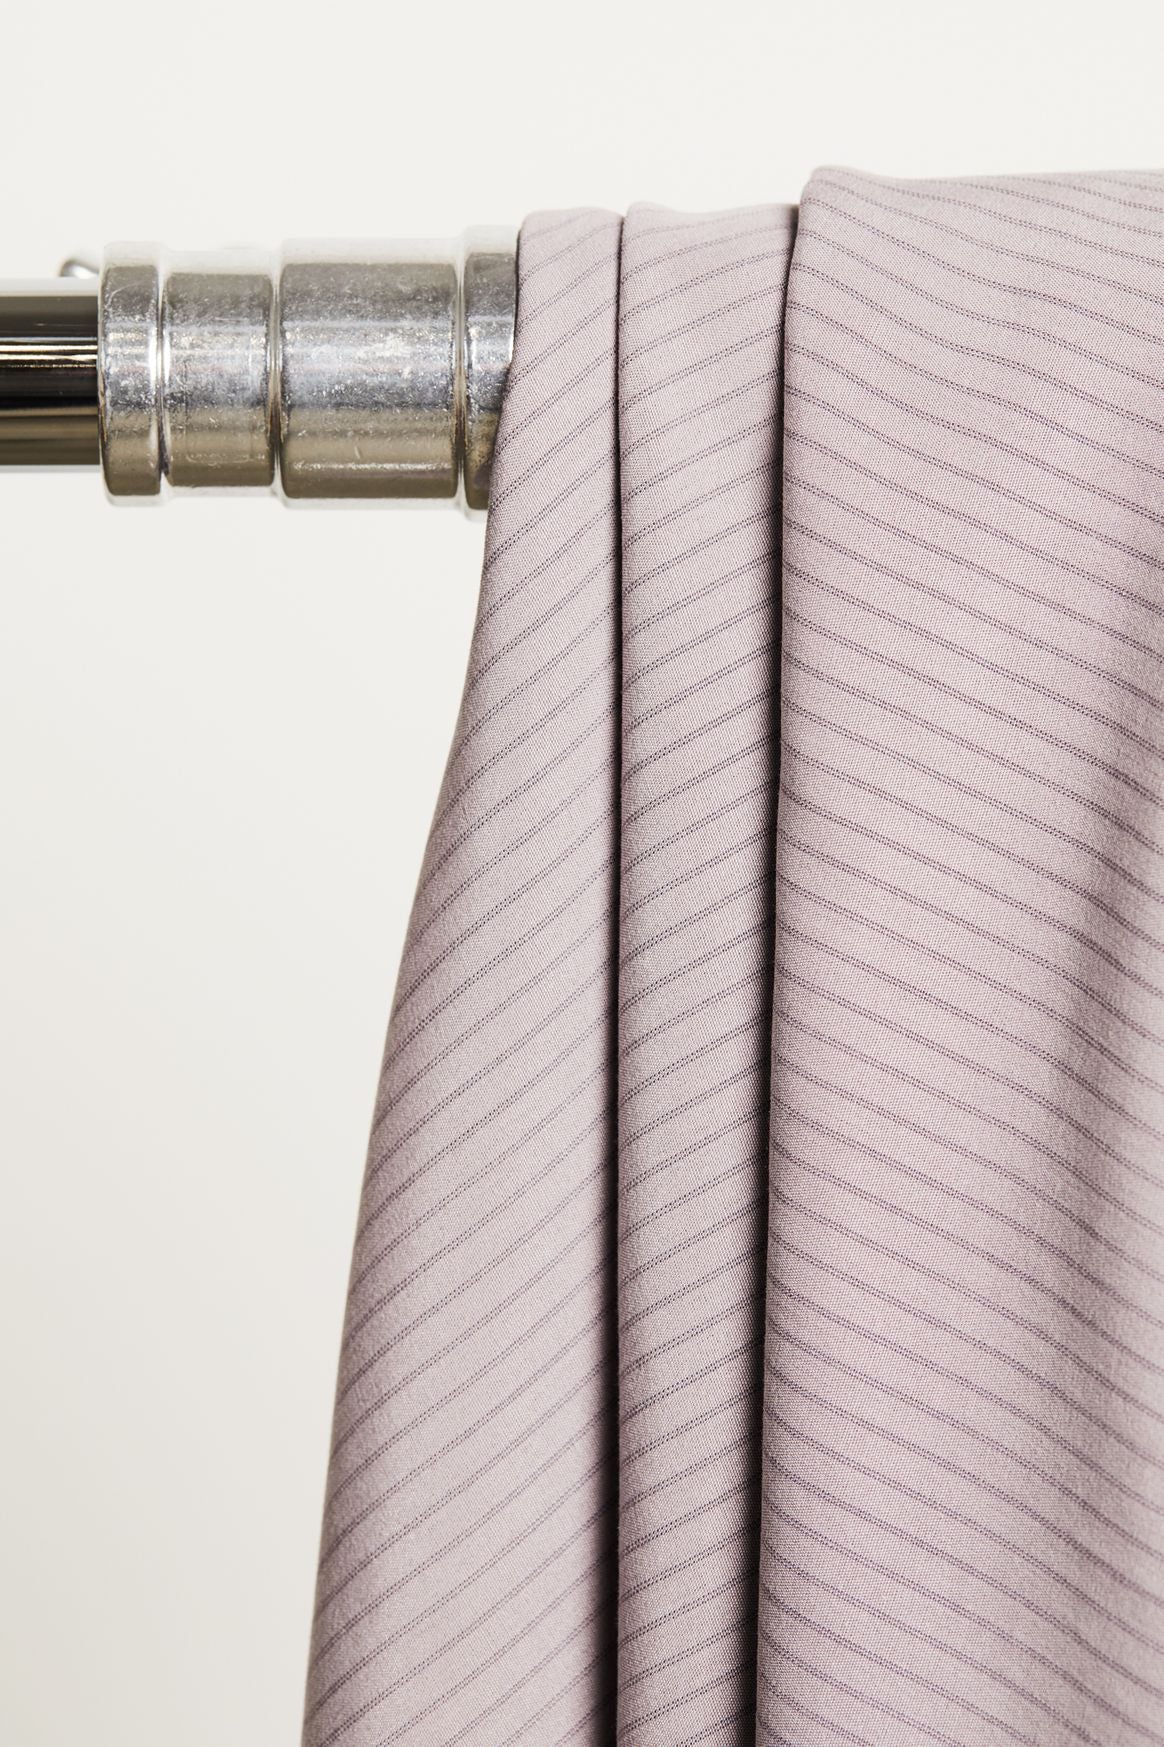 Meet MILK - Purple Haze Two Tone Slim Stripe with TENCEL™ Lyocell fibers